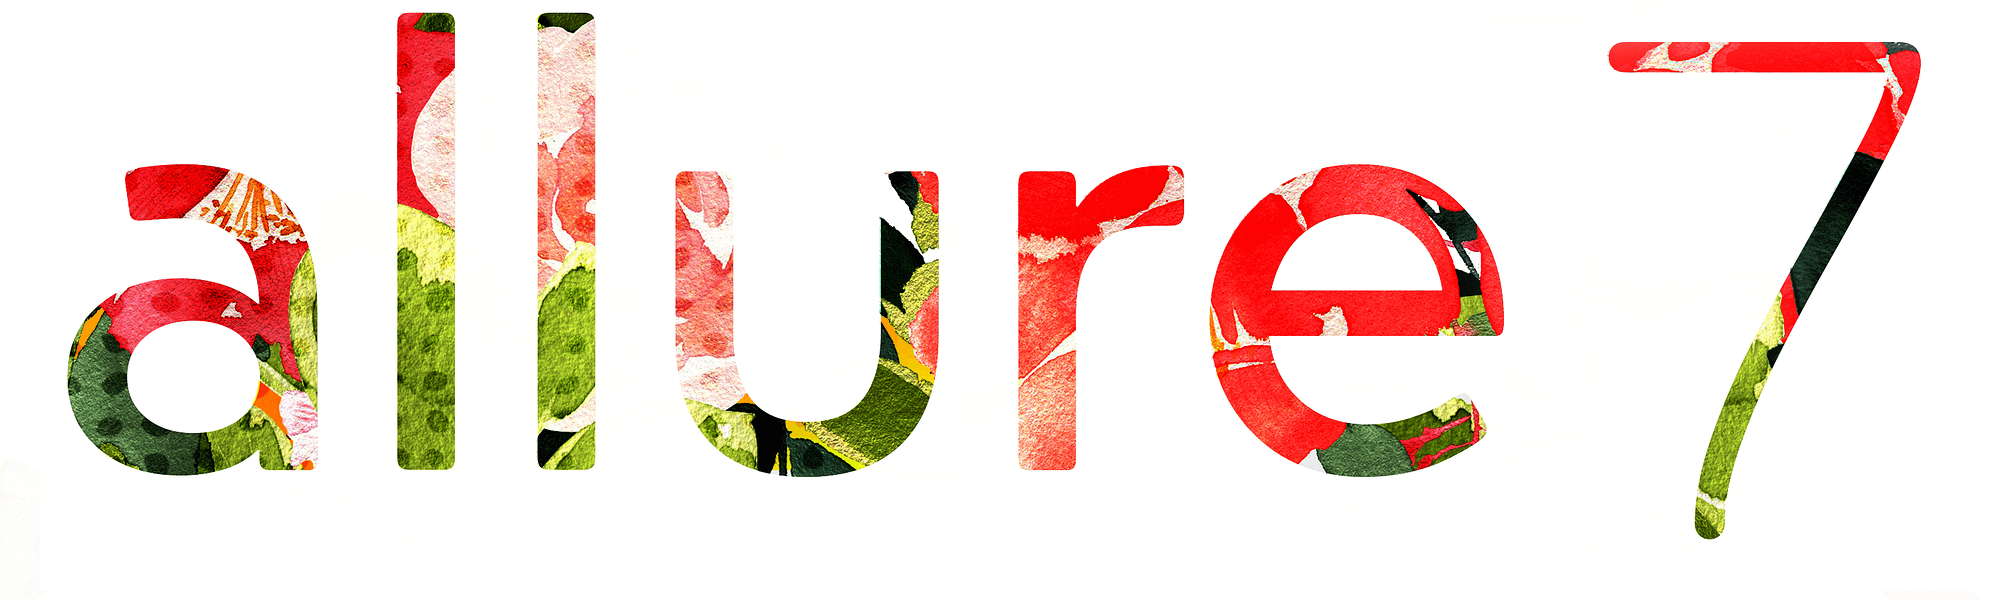 allure7 logo